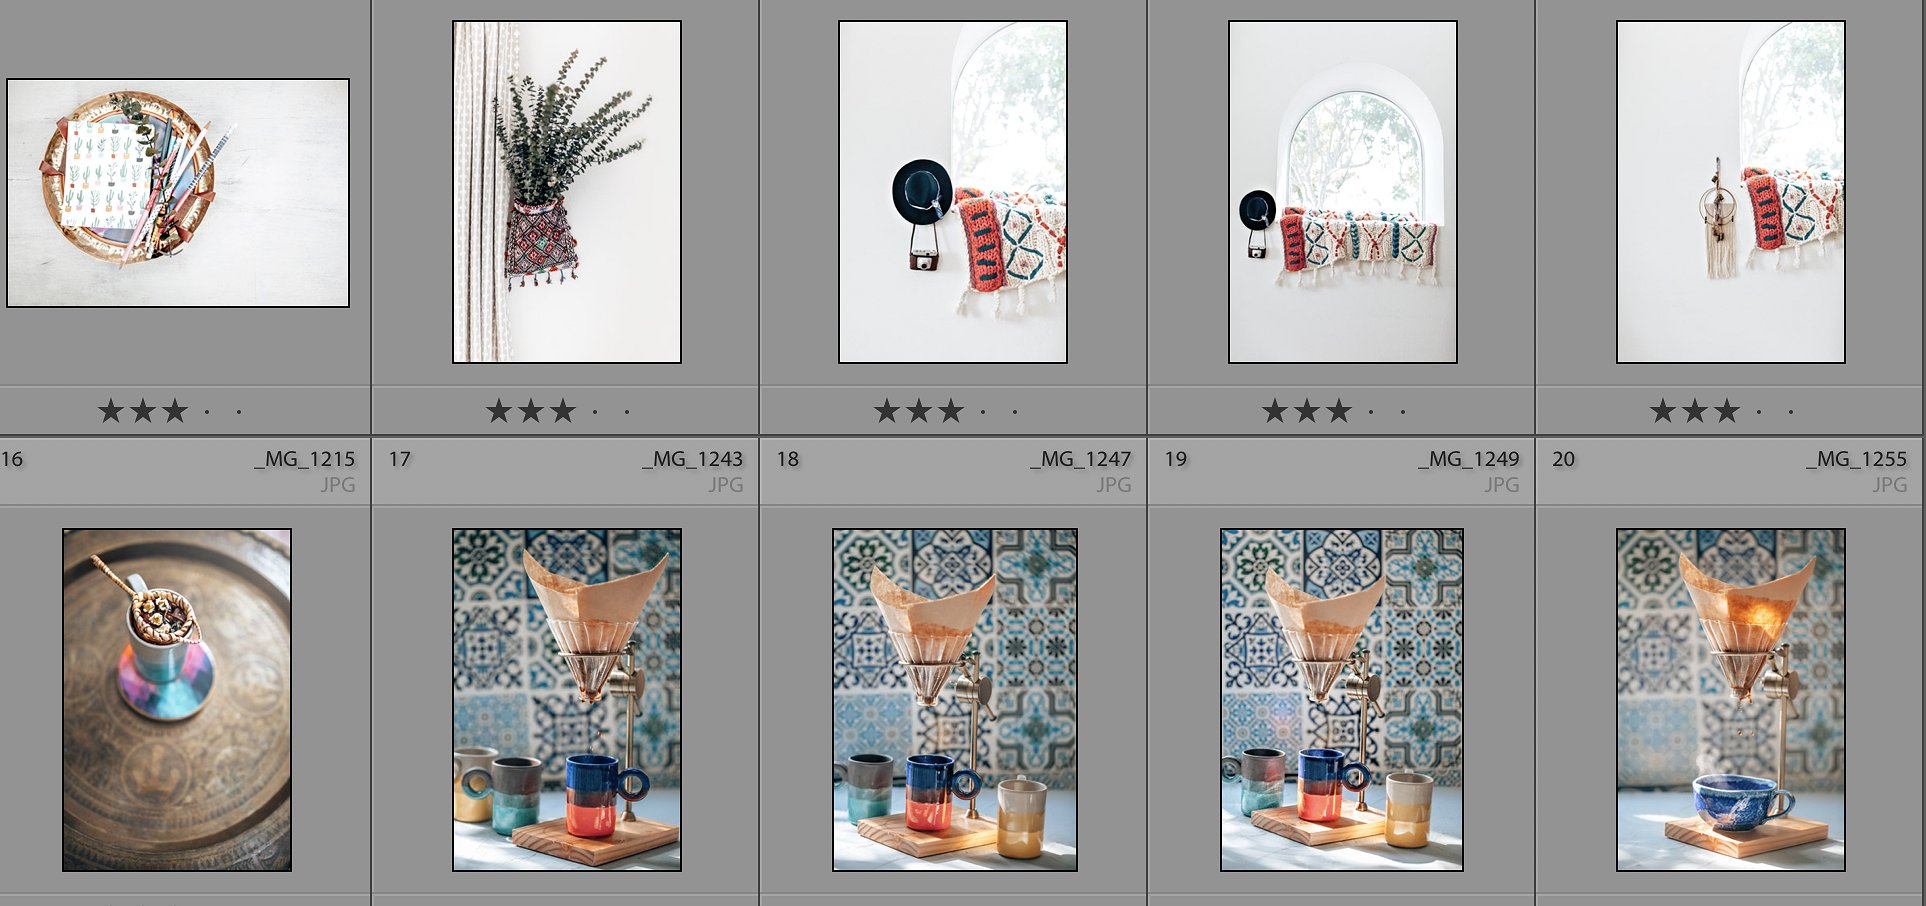 30张高分辨率的万花筒生活照片 30 Kaleidoscope Lifestyle Photo Bundle插图4